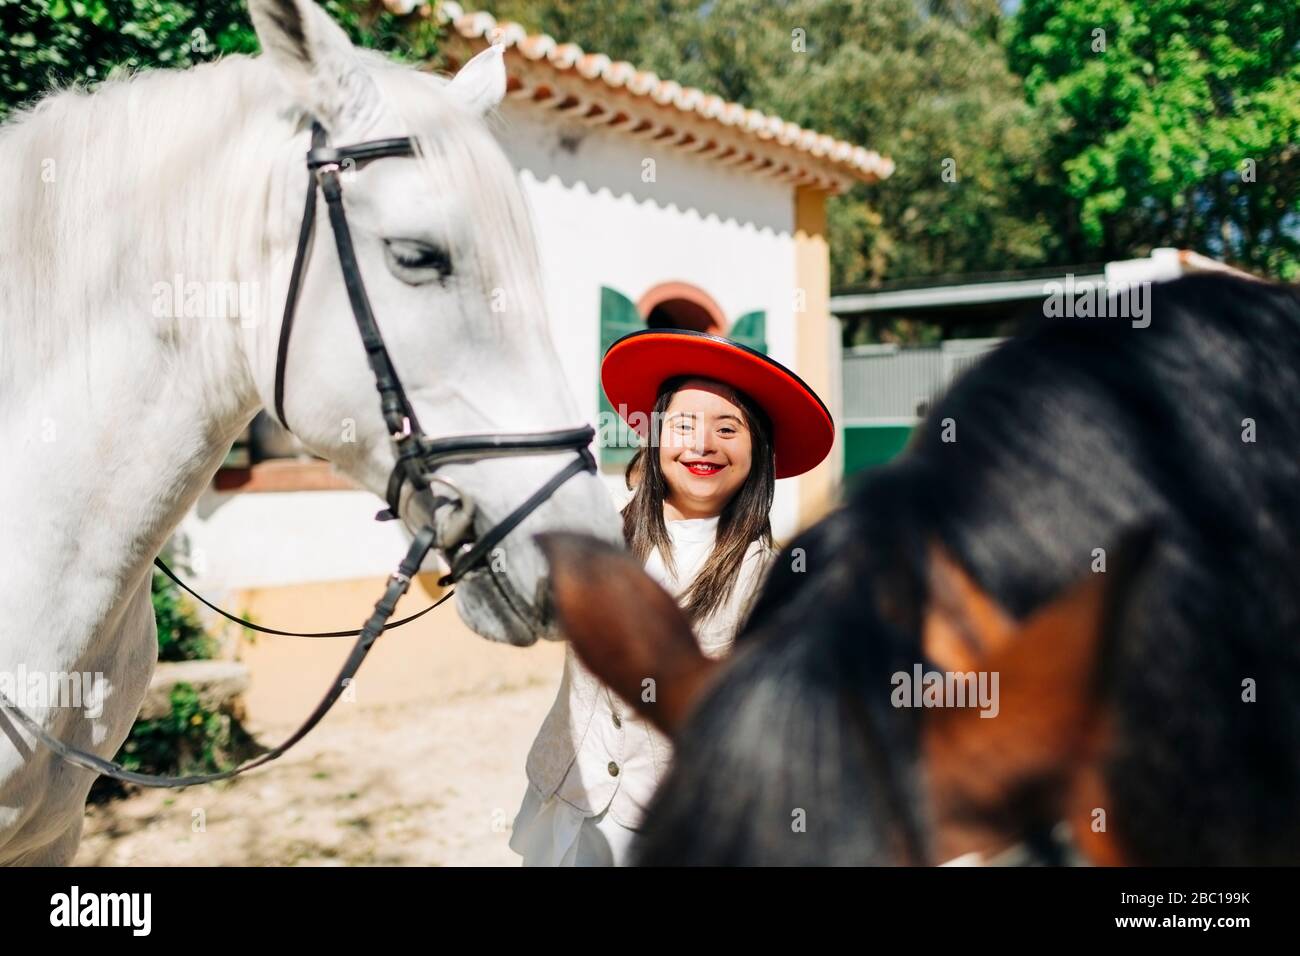 Adolescent avec syndrome de Down portant un chapeau rouge avec deux chevaux Banque D'Images